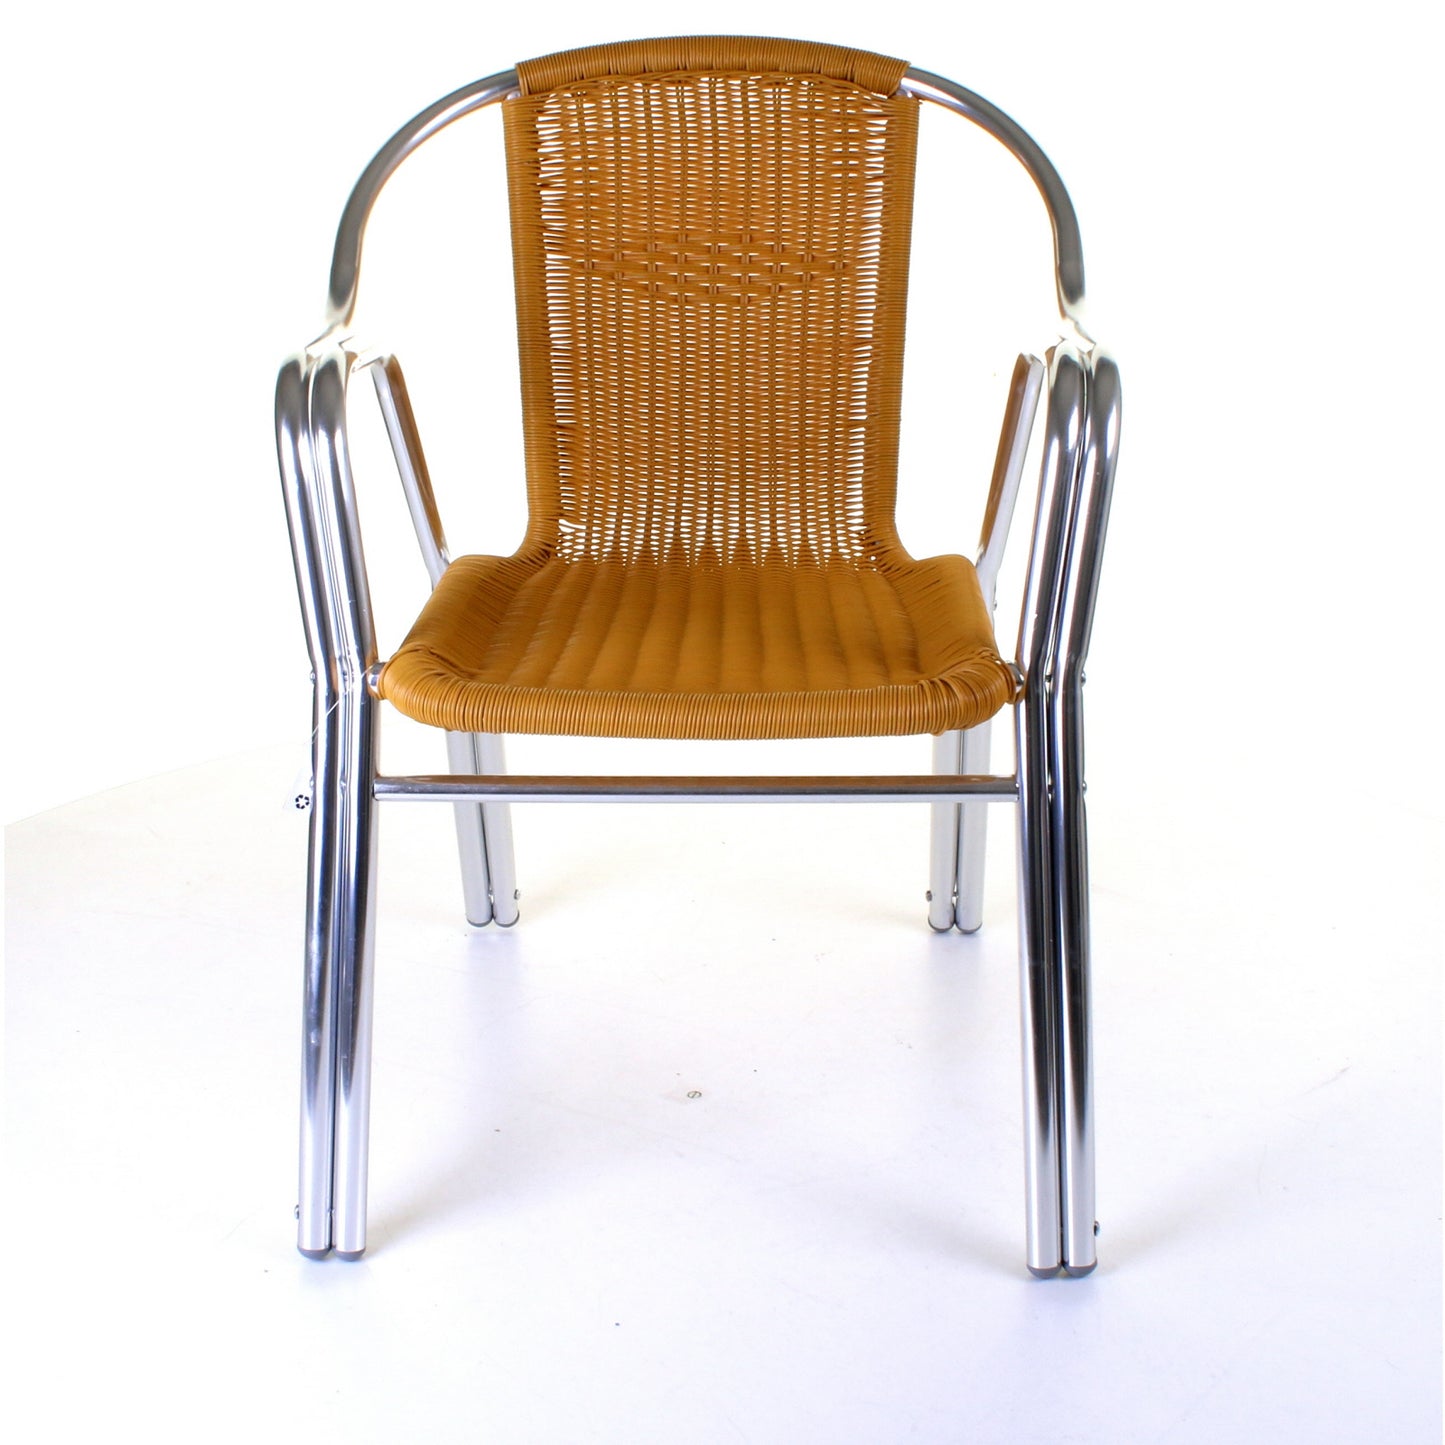 Cabarete Bistro Chair - Tan Wicker